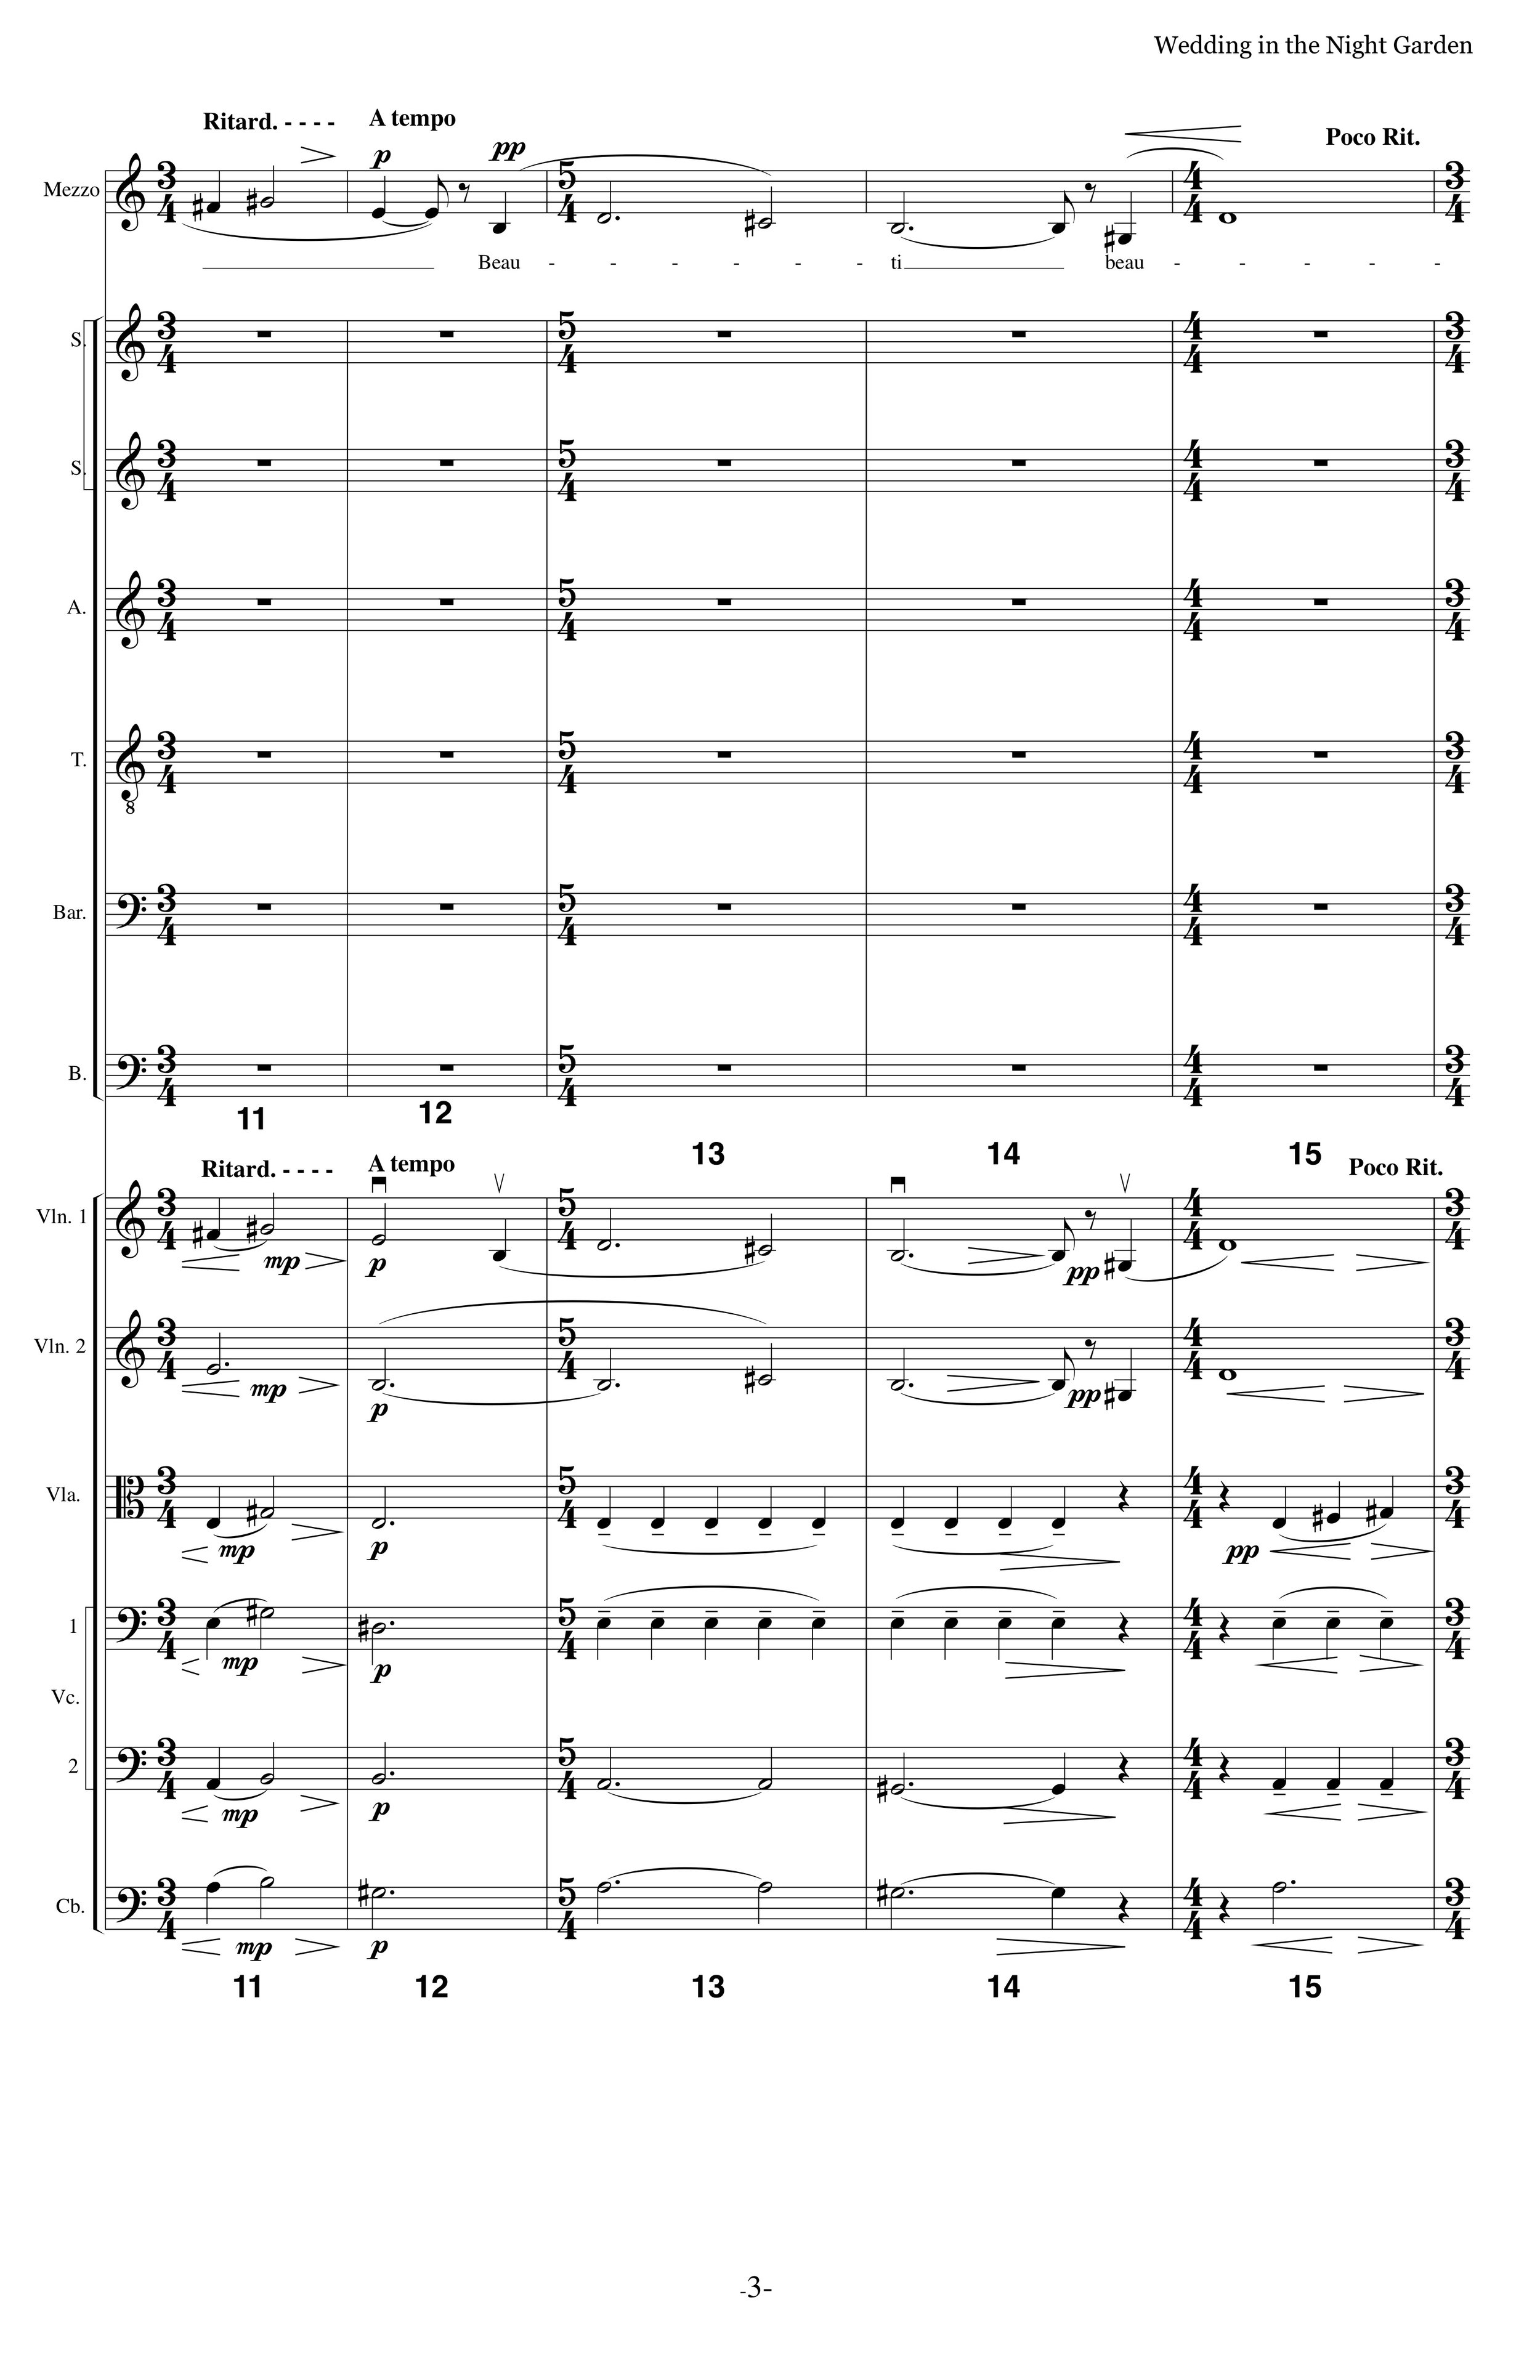 WITNG_MS Strings Choir p3.jpg